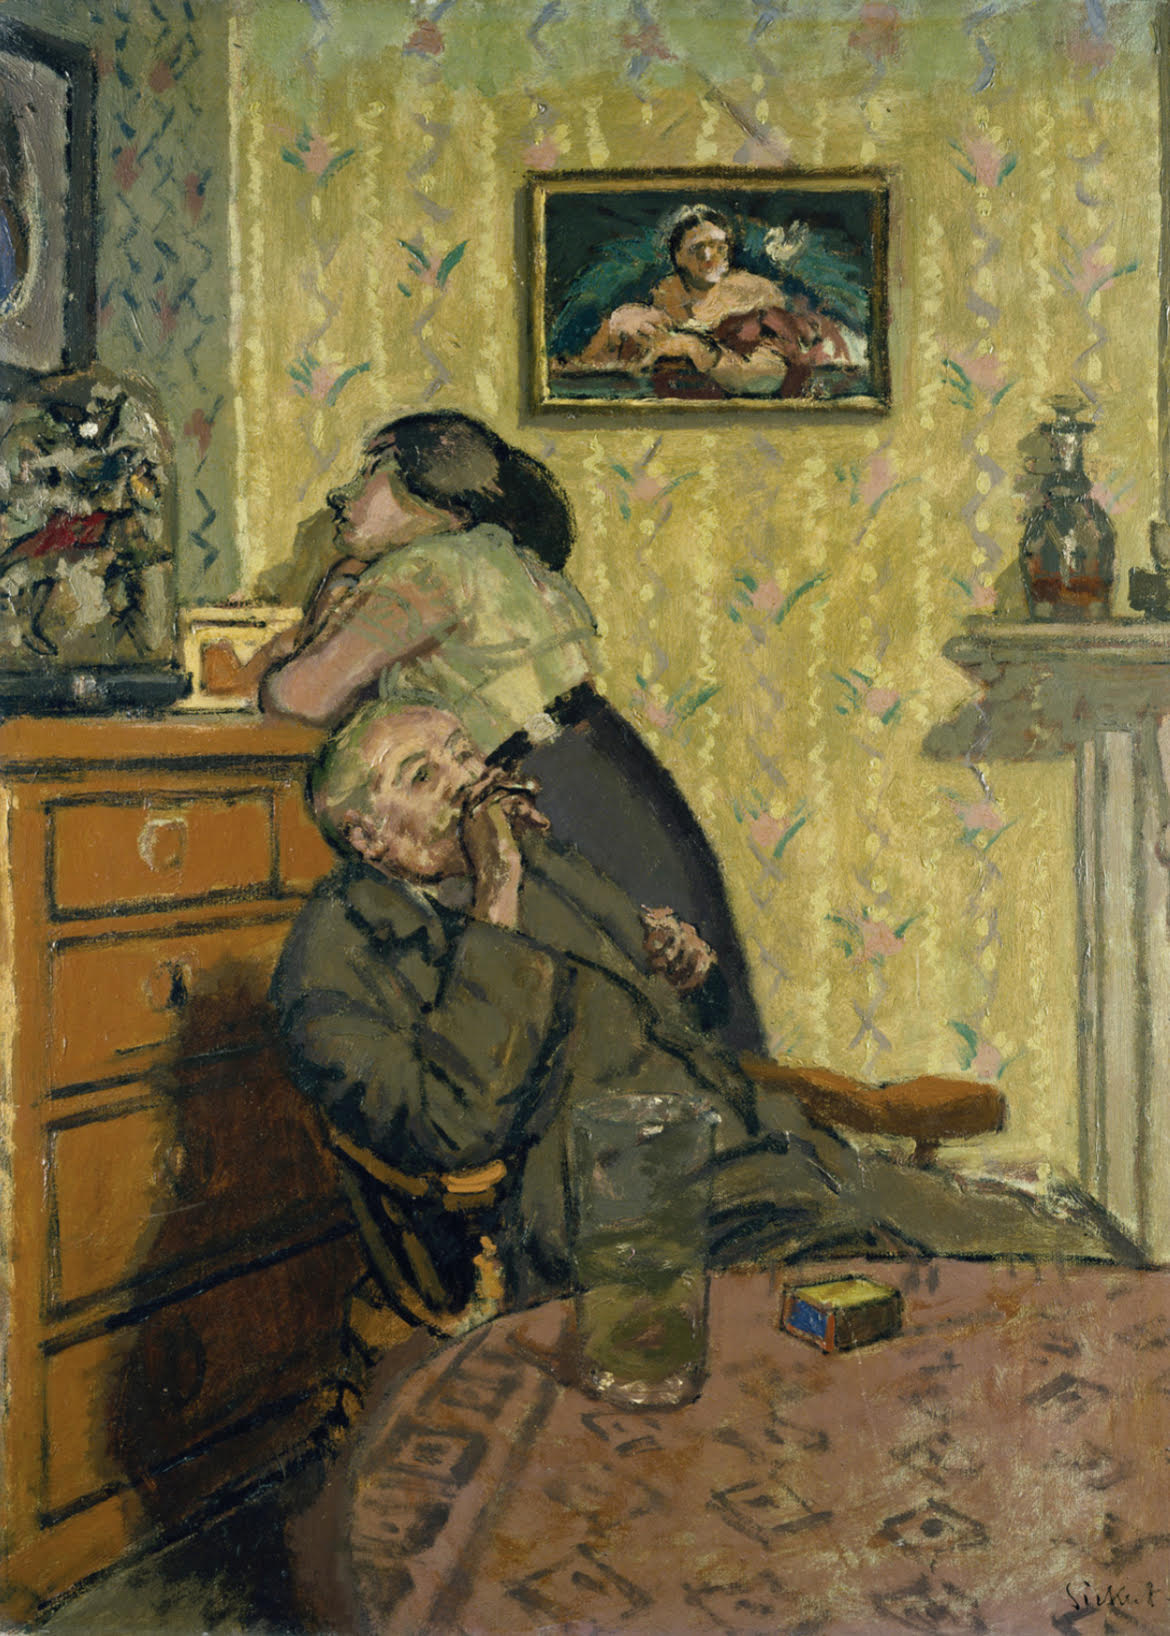 إنوي by Walter Sickert - حوالي 1914 م - 152,4 x 112,4 cm 